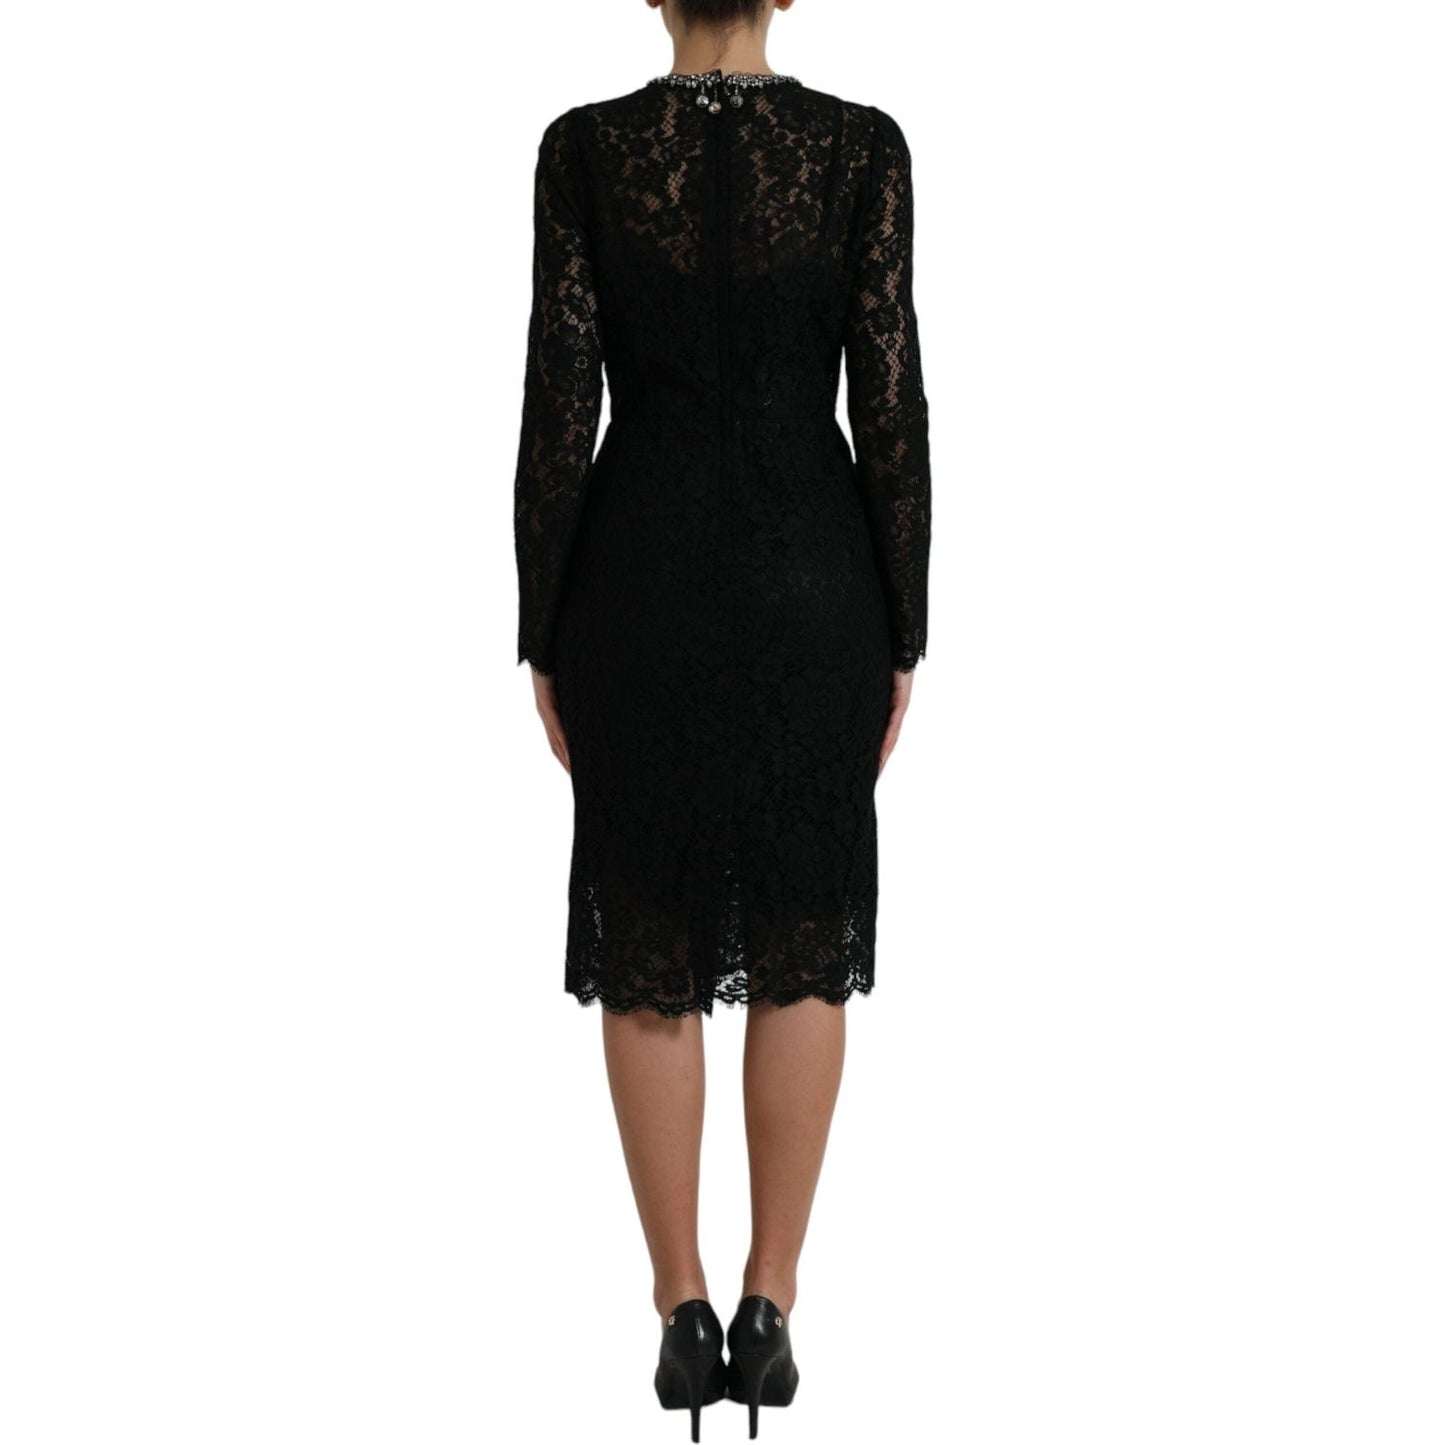 Dolce & Gabbana Elegant Crystal-Embellished Sheath Dress elegant-crystal-embellished-sheath-dress